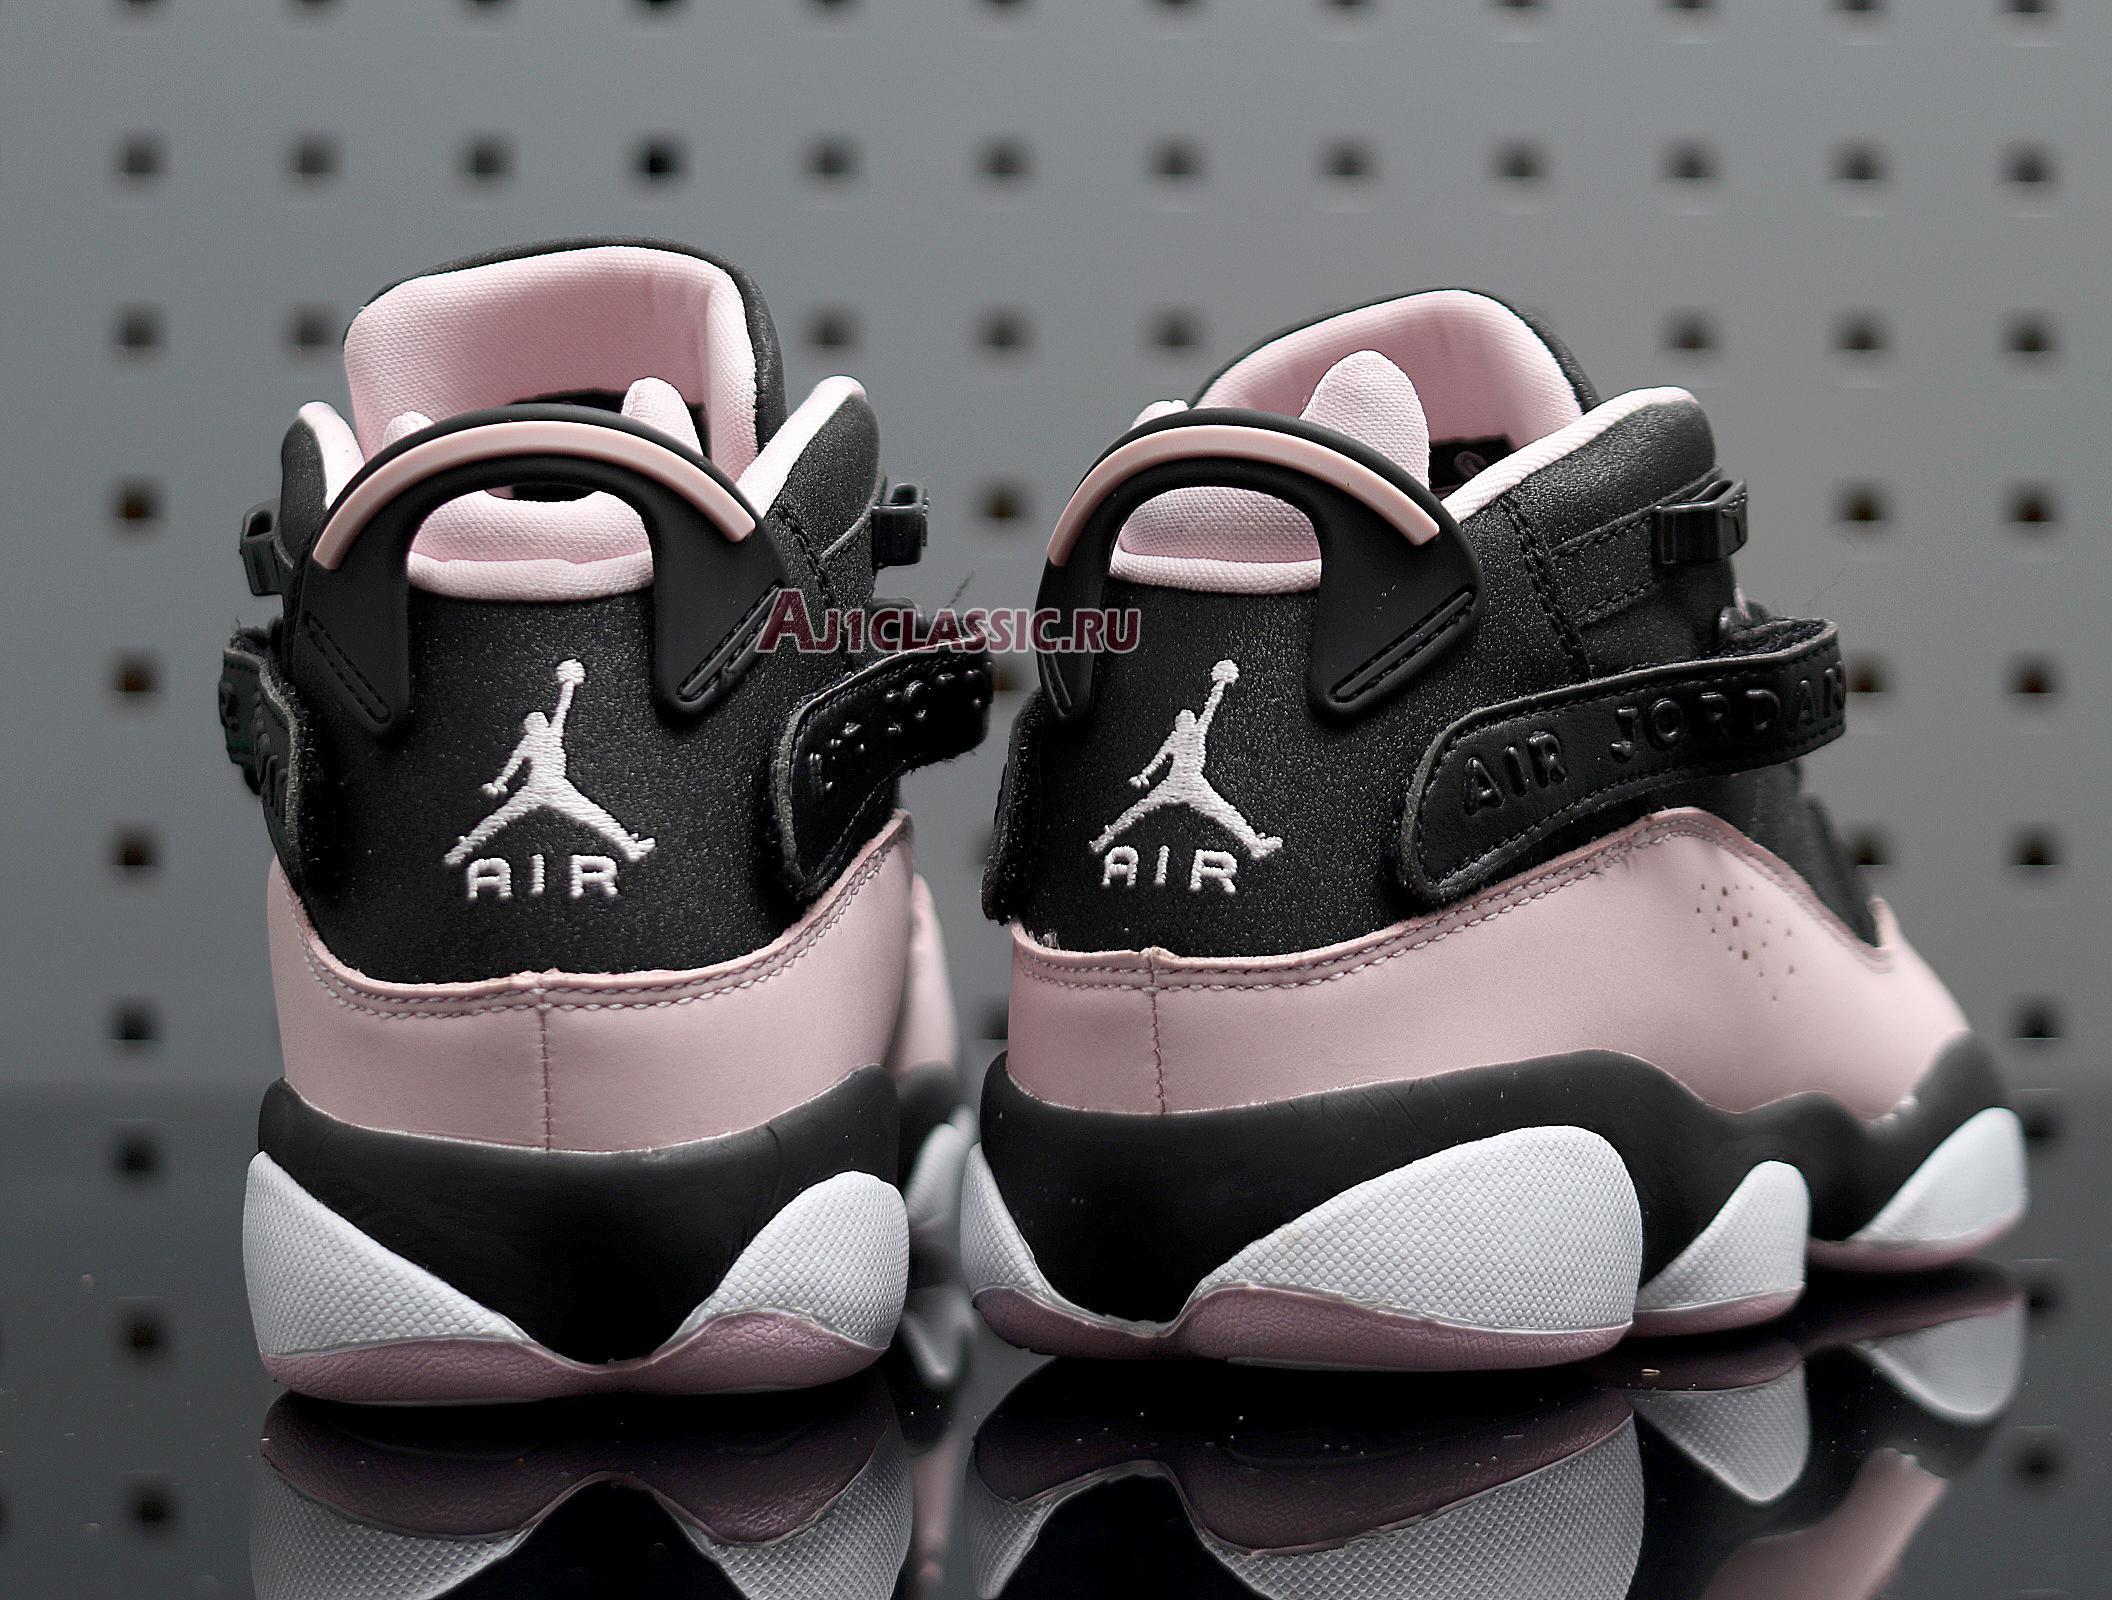 Air Jordan 6 Rings GS "Black Pink Foam" 323399-006